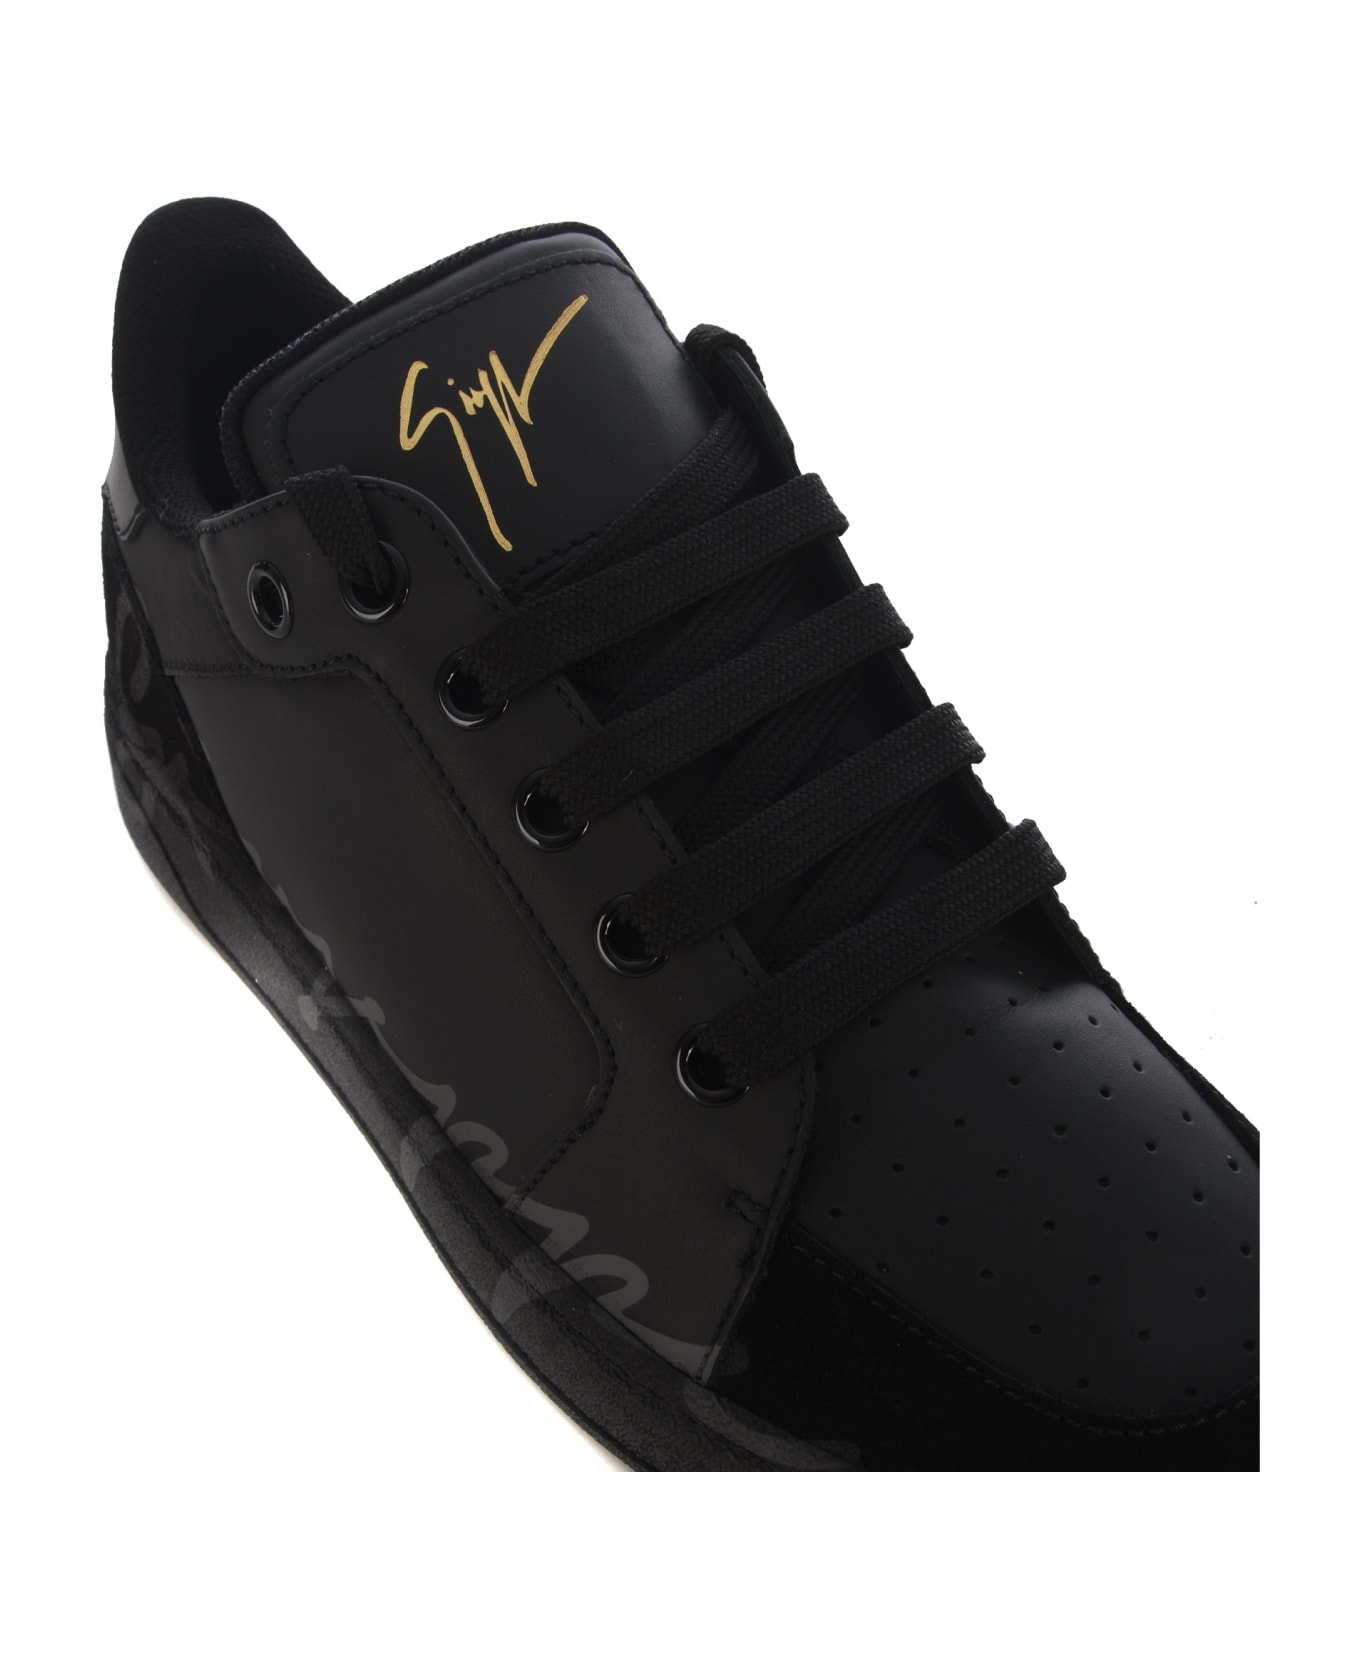 Giuseppe Zanotti Sneakers Giuseppe Zanotti "gz94" In Leather And Velvet - Nero スニーカー